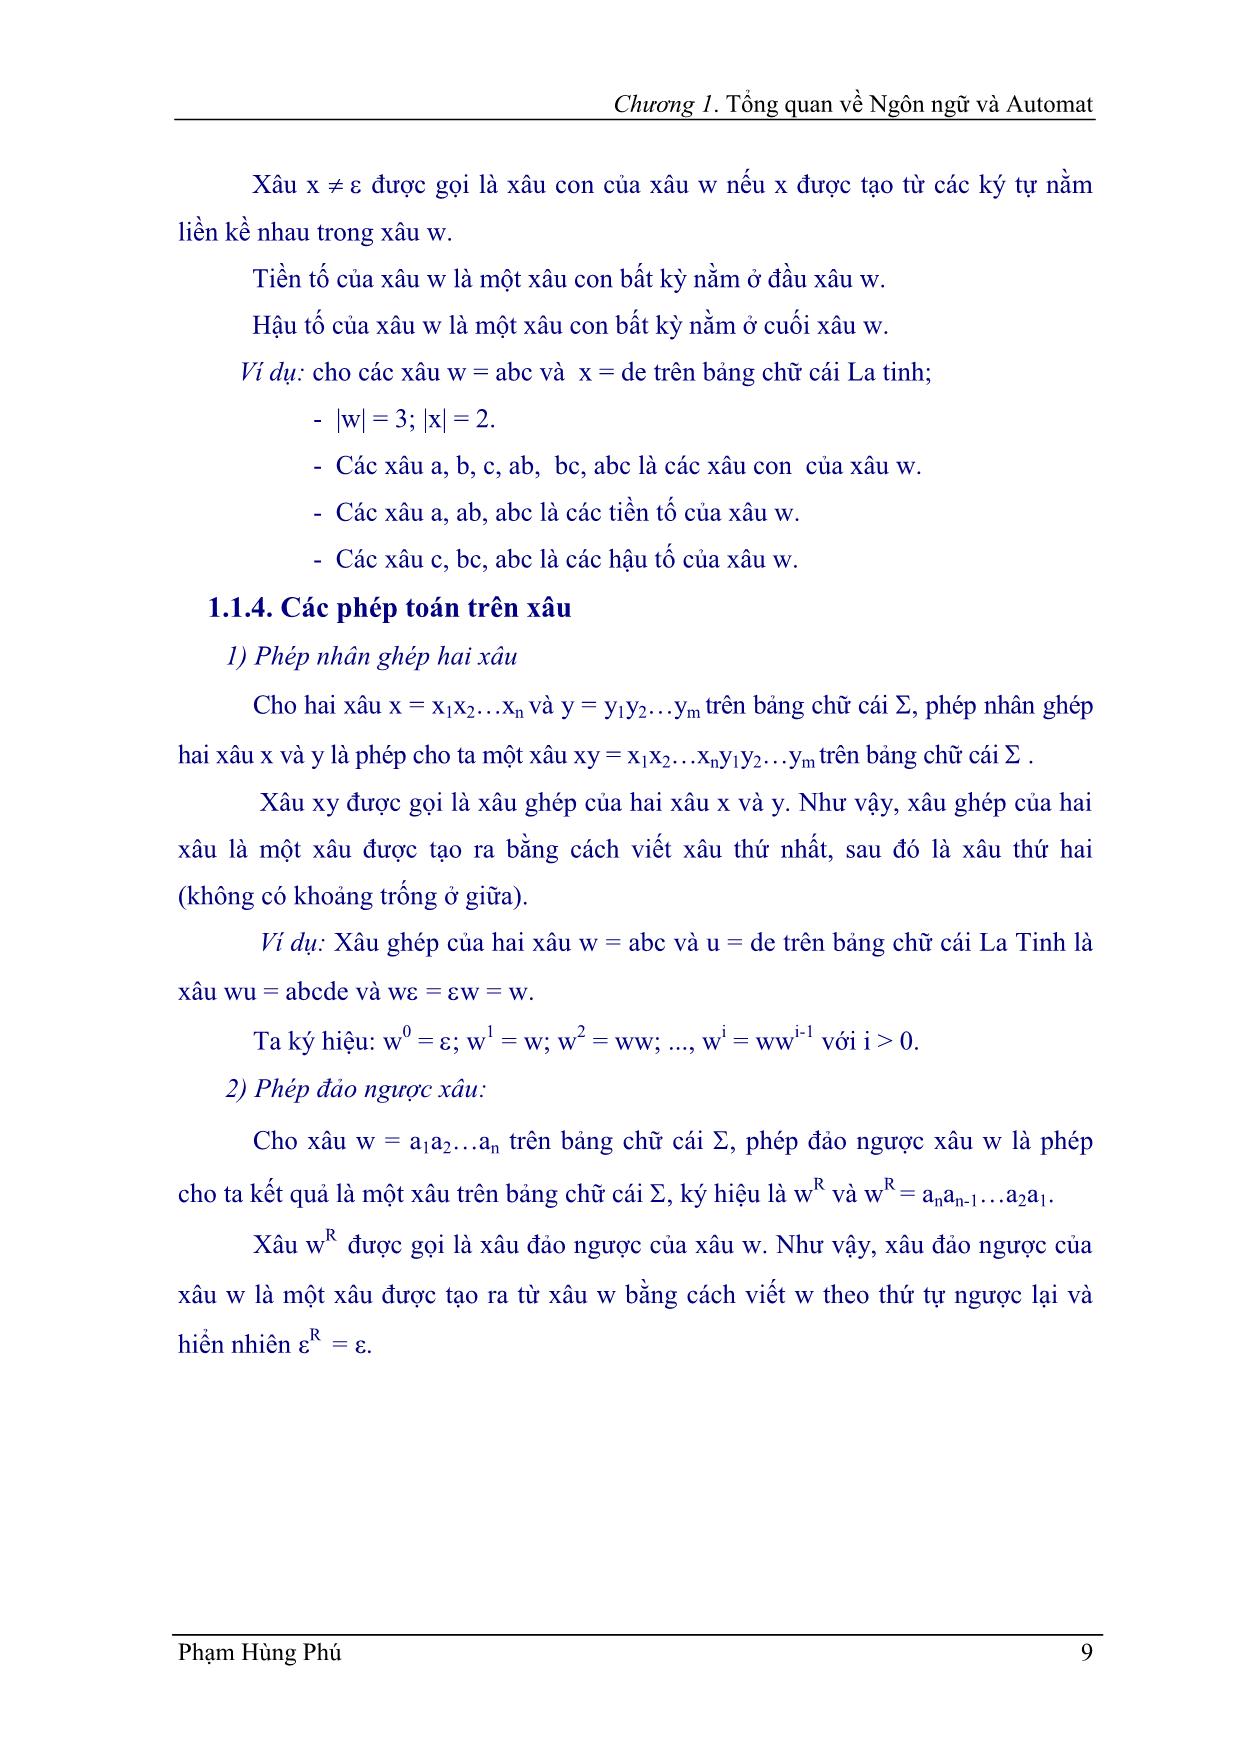 Giáo trình Ngôn ngữ hình thức trang 10